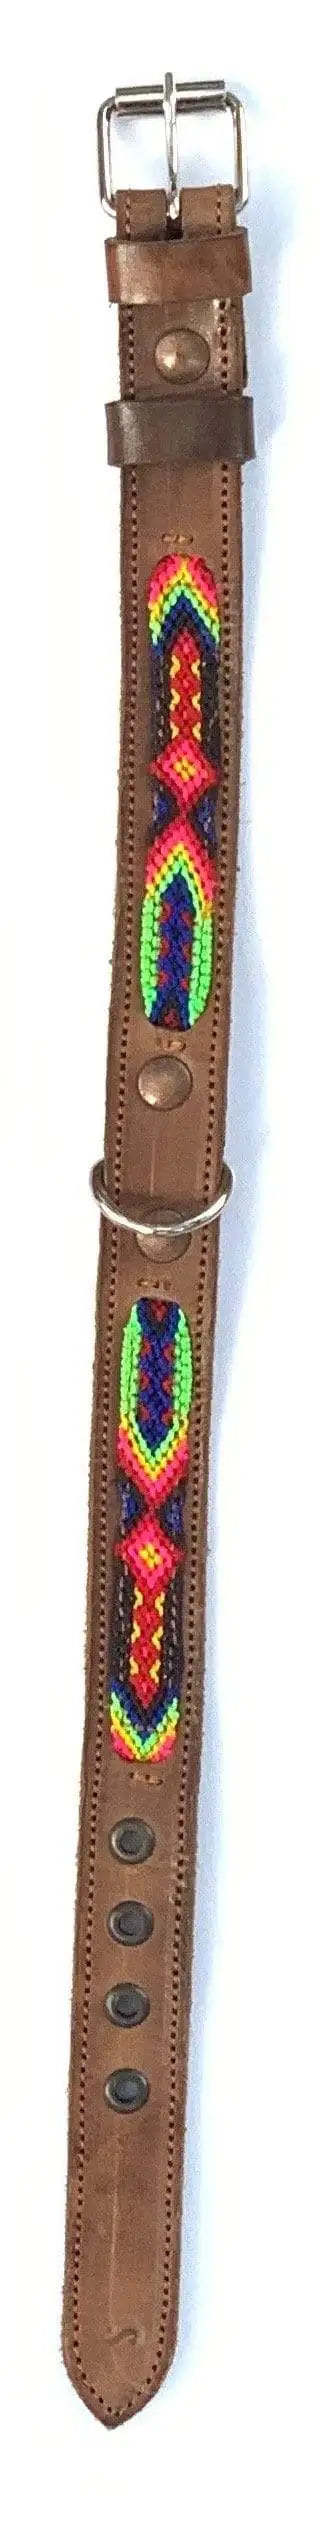 Double Detail Artisanal Handmade Dog Collars - 17